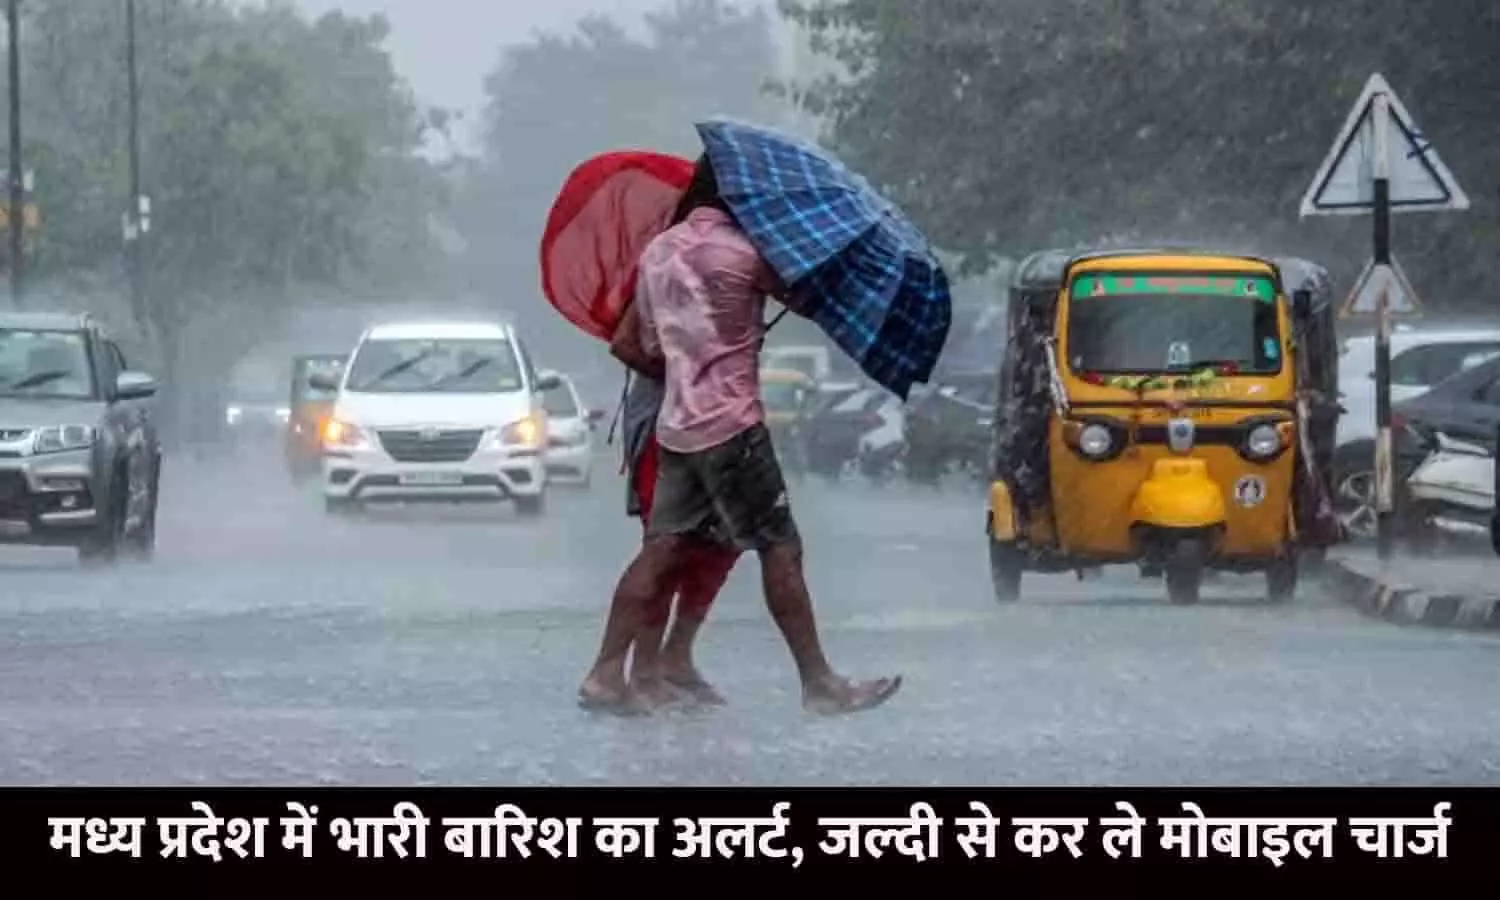 Weather Alert In MP: मध्य प्रदेश में भारी बारिश का अलर्ट, जल्दी से कर ले मोबाइल चार्ज